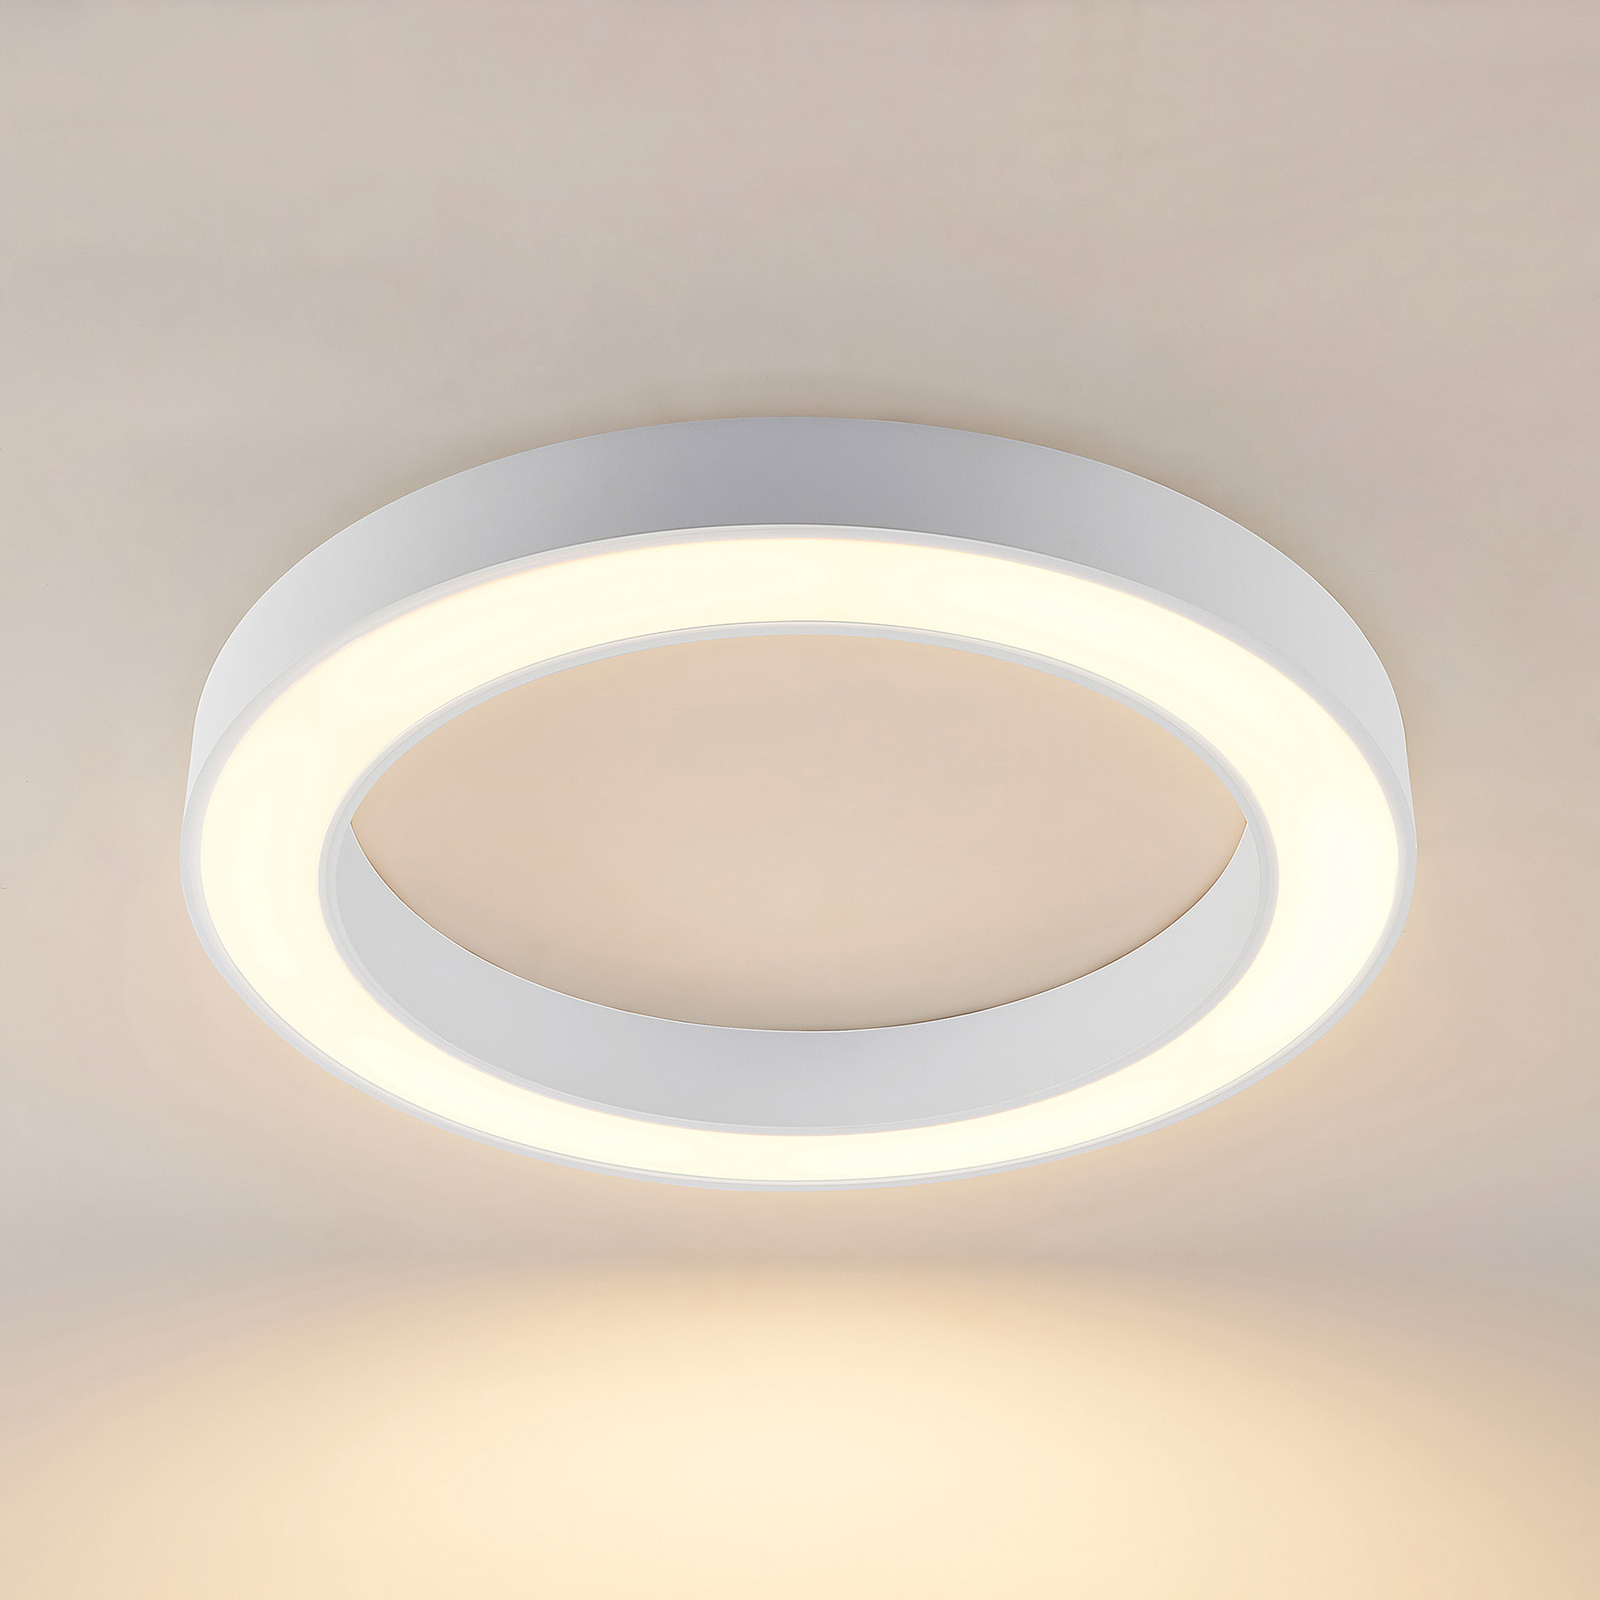 Arcchio Sharelyn LED ceiling light, 80 cm